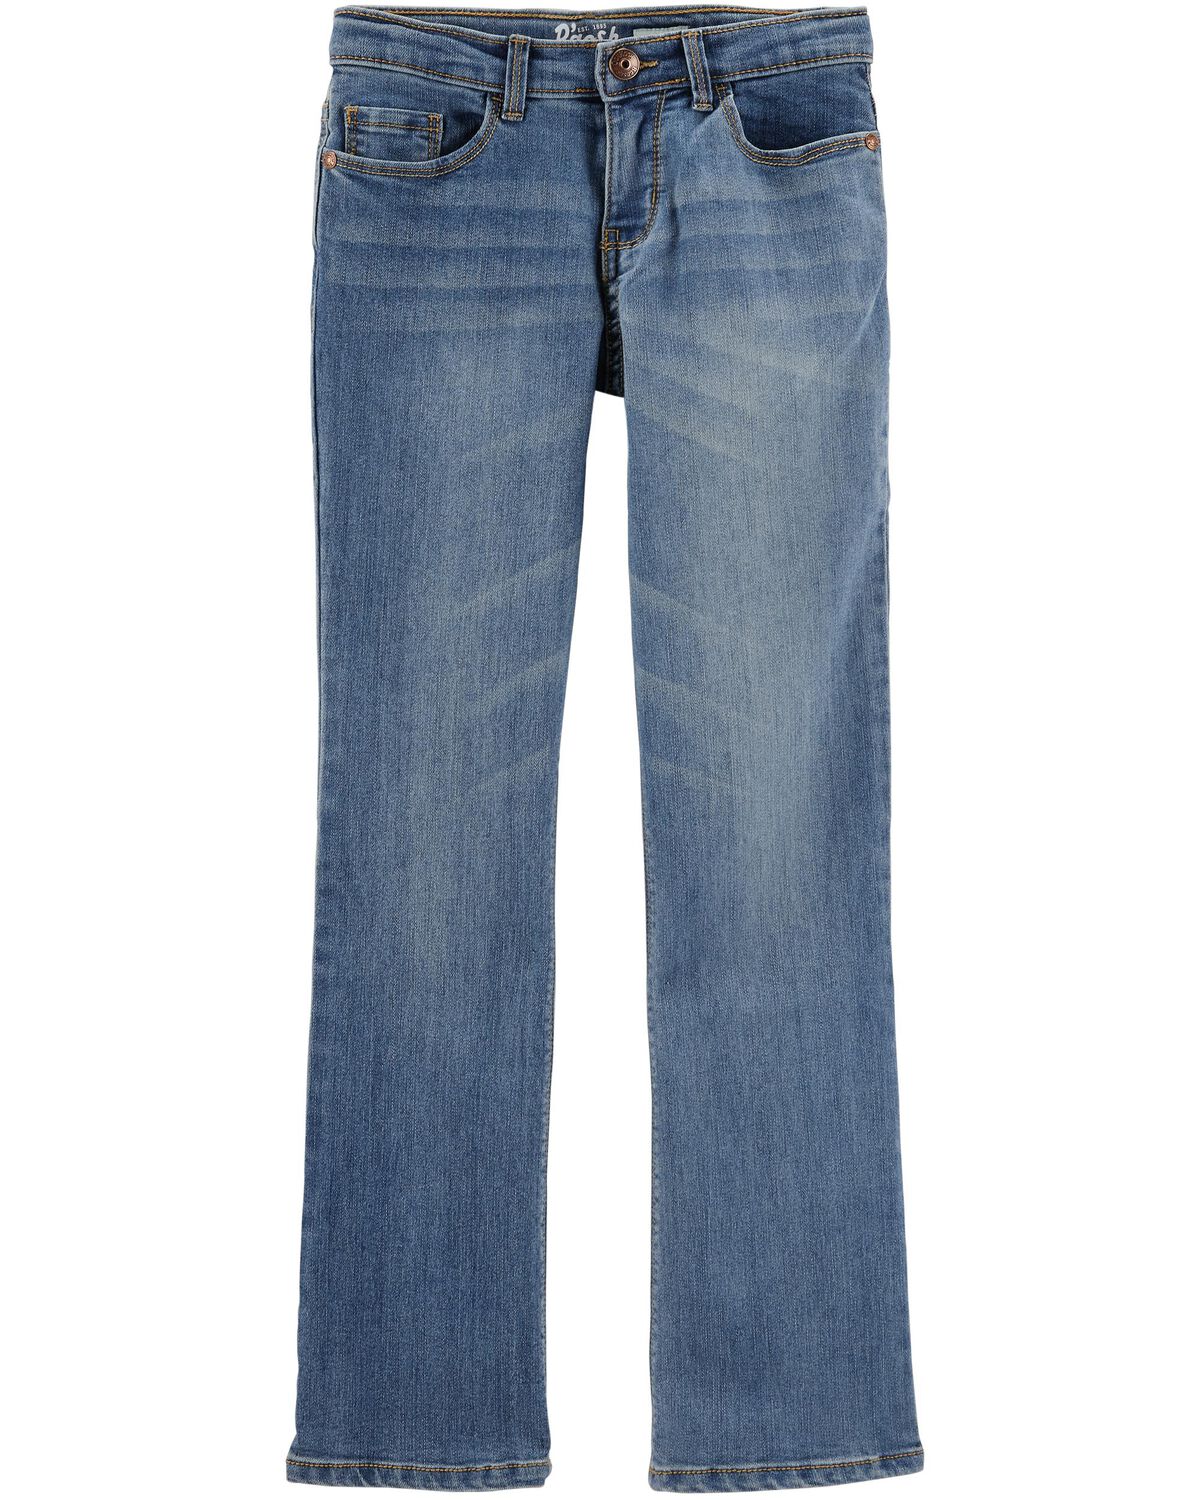 Upstate Blue Wash Kid Medium Wash Plus-Fit Boot-Cut Jeans | oshkosh.com